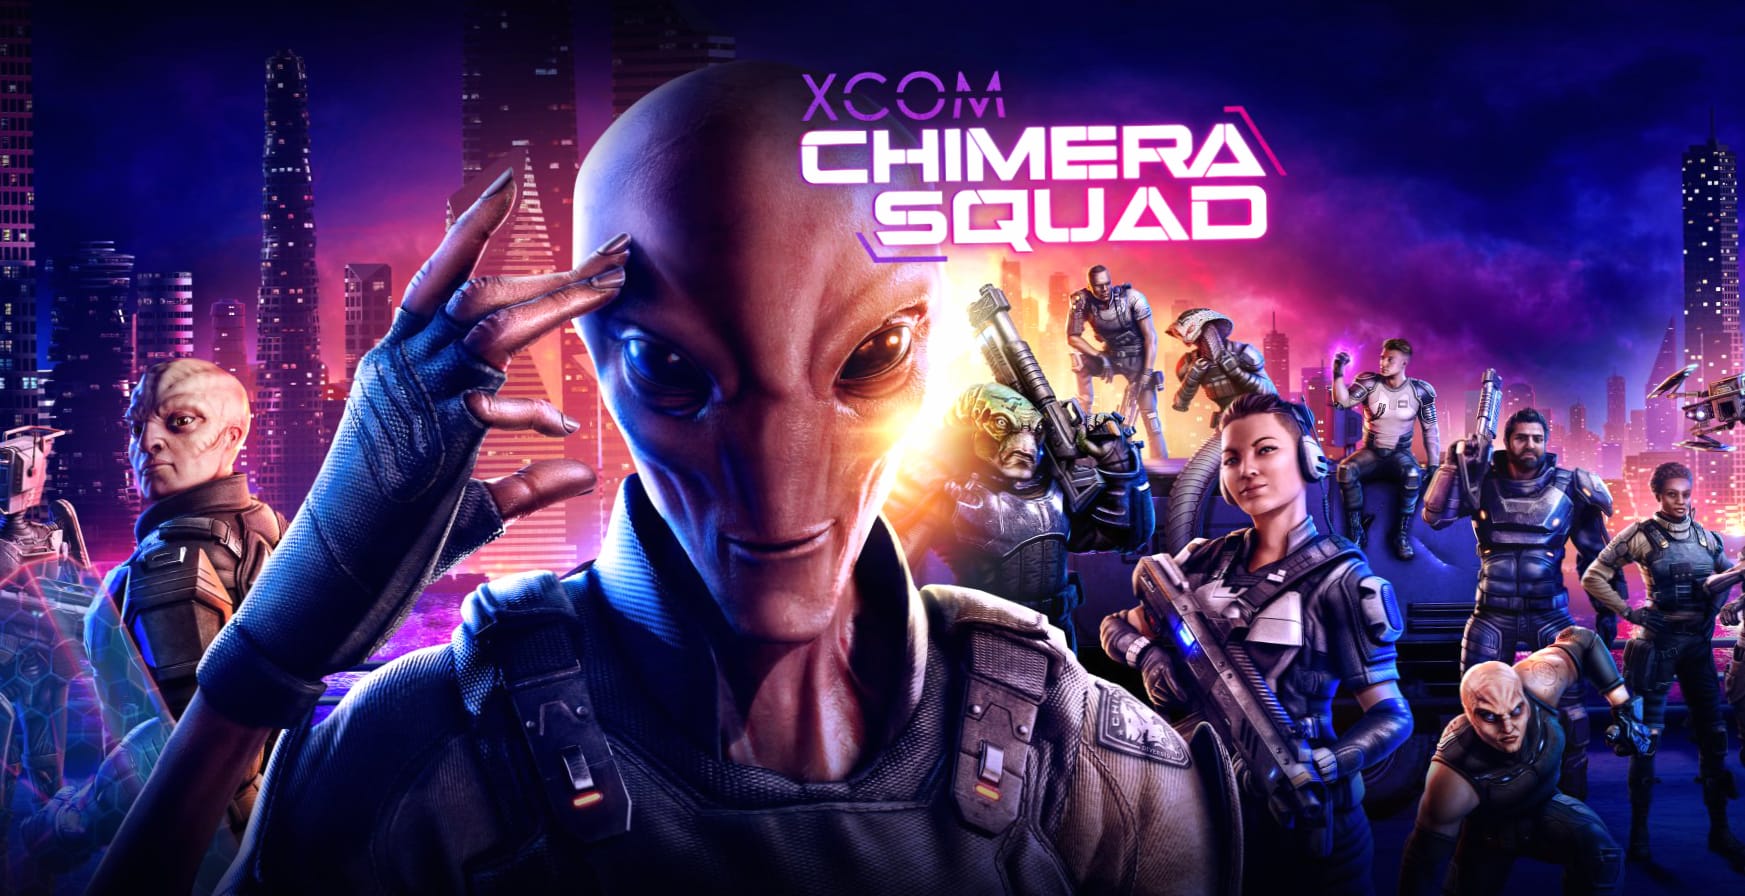 XCOM Chimera Squad at 2048 x 2048 iPad size wallpapers HD quality